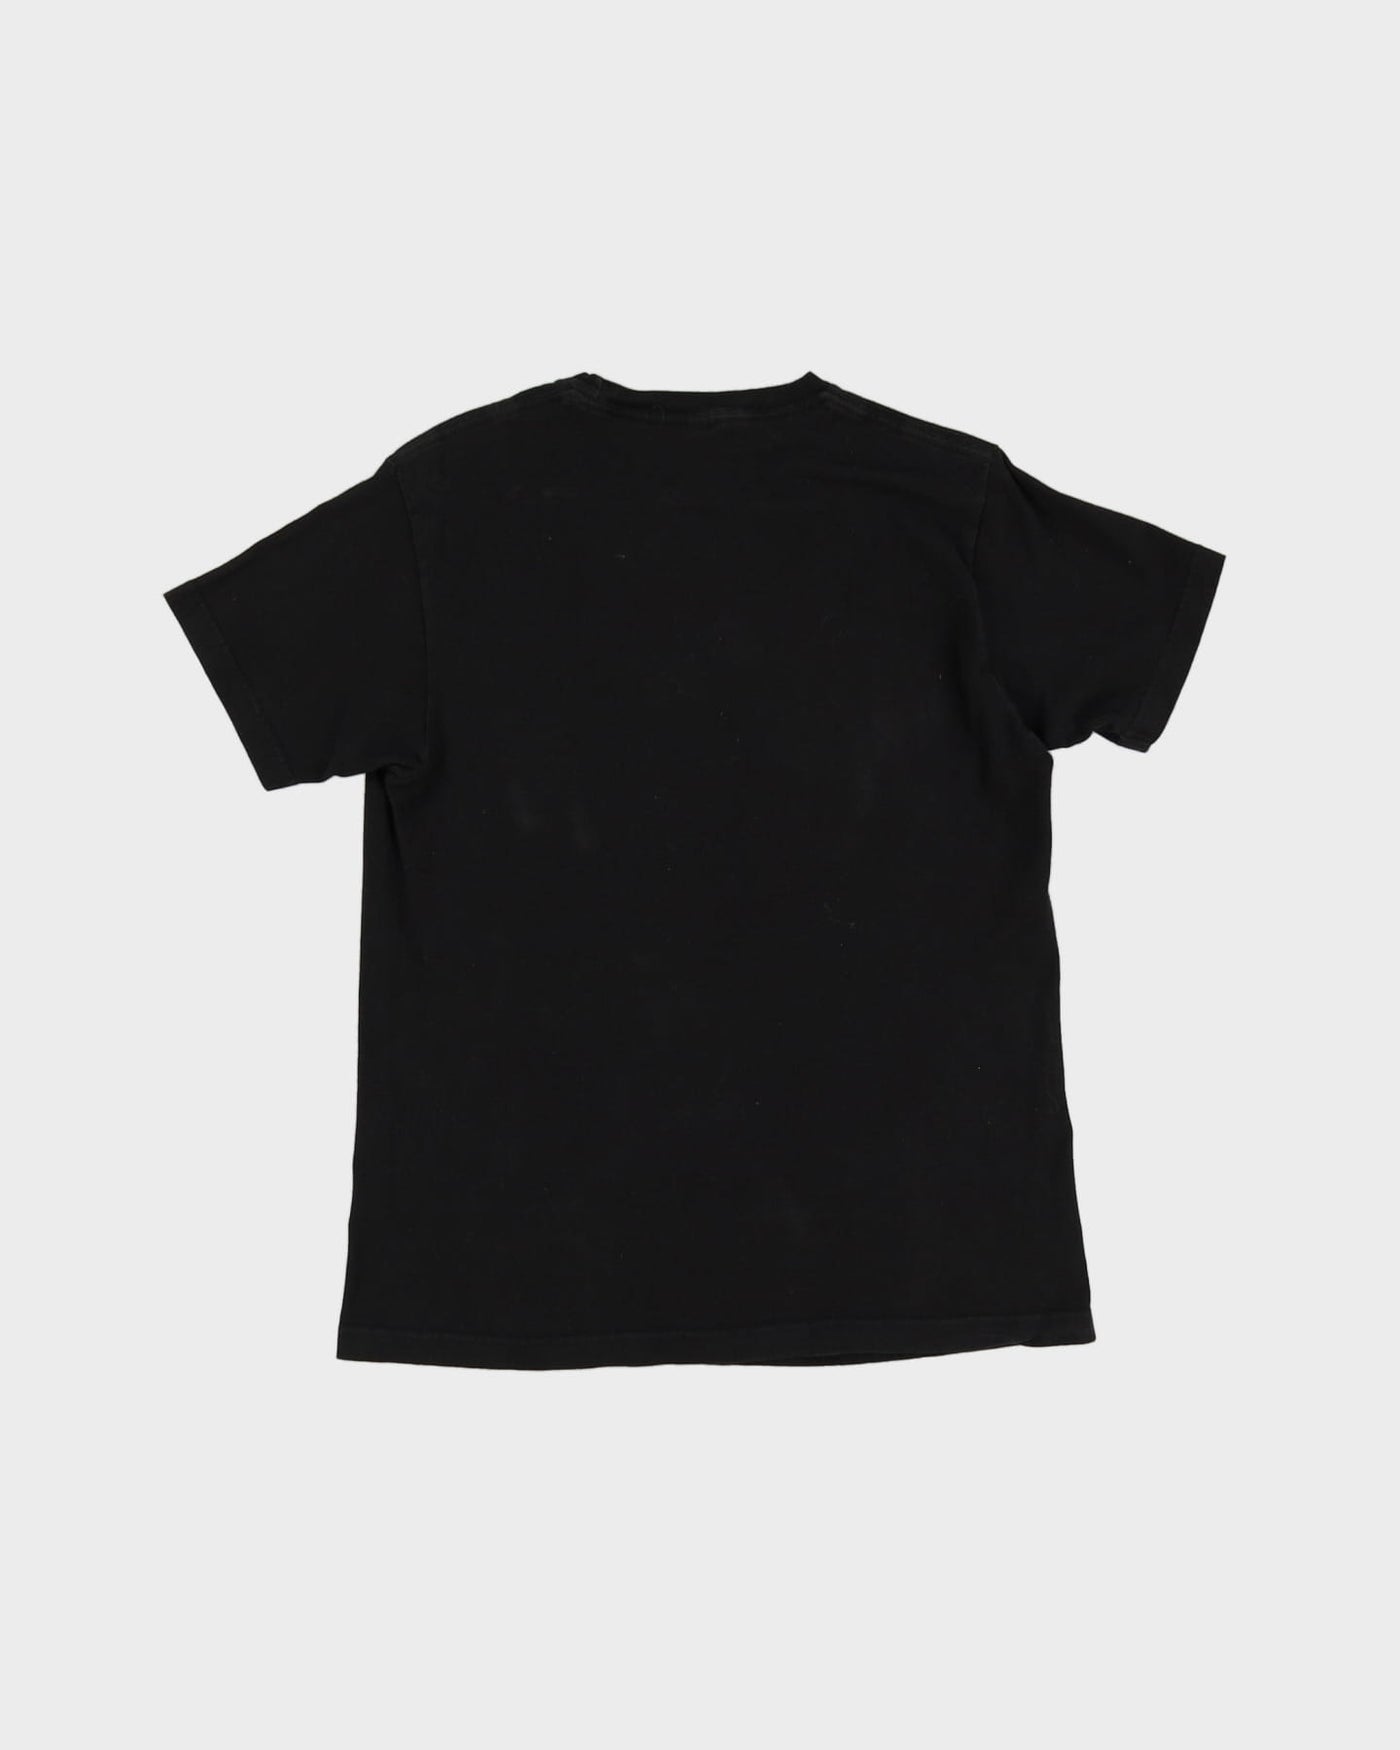 2014 Gorillaz Noodle Dare Graphic Black Band T-Shirt - M